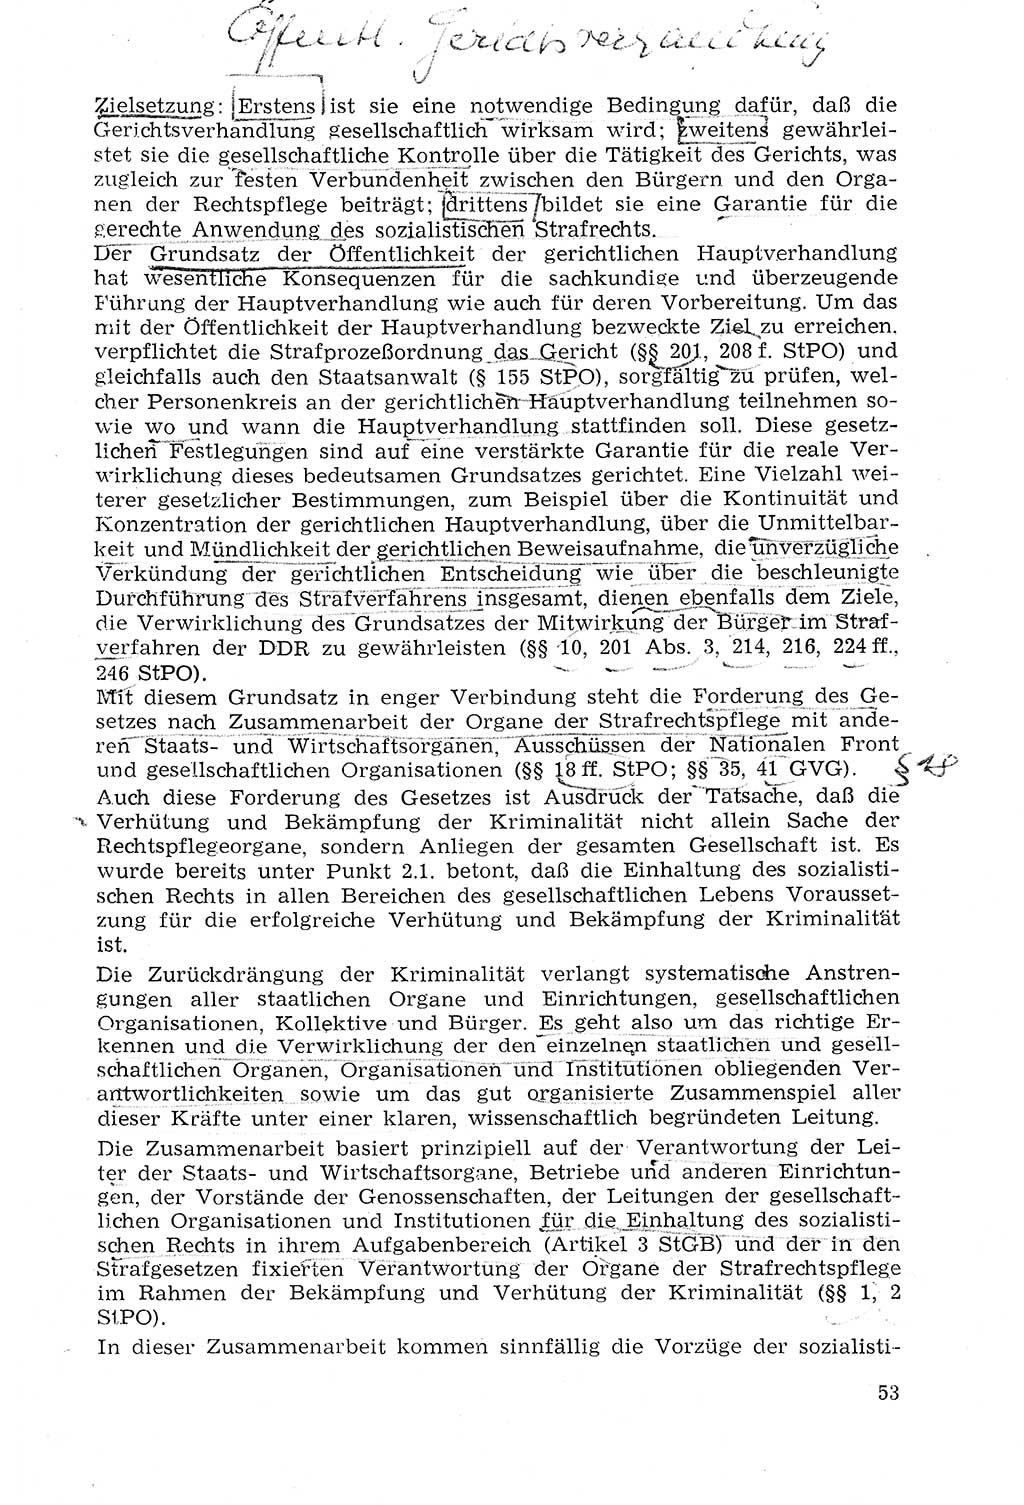 Strafprozeßrecht der DDR (Deutsche Demokratische Republik), Lehrmaterial 1969, Seite 53 (Strafprozeßr. DDR Lehrmat. 1969, S. 53)